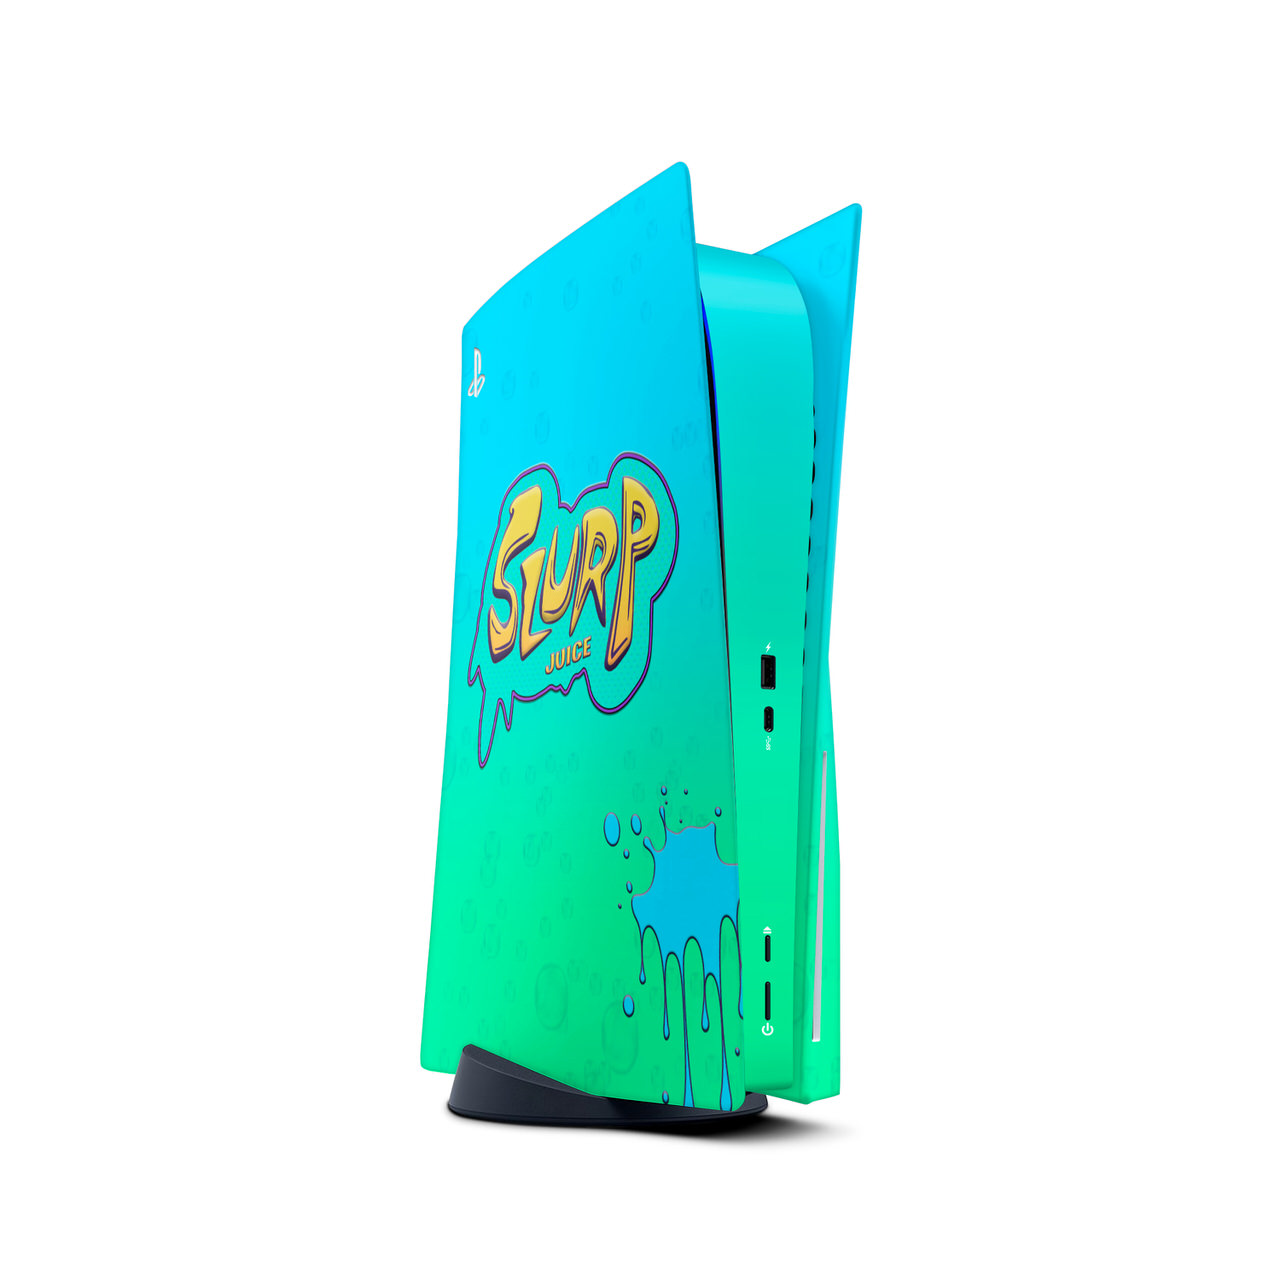 Slurp Juice PS4 Controller Skin